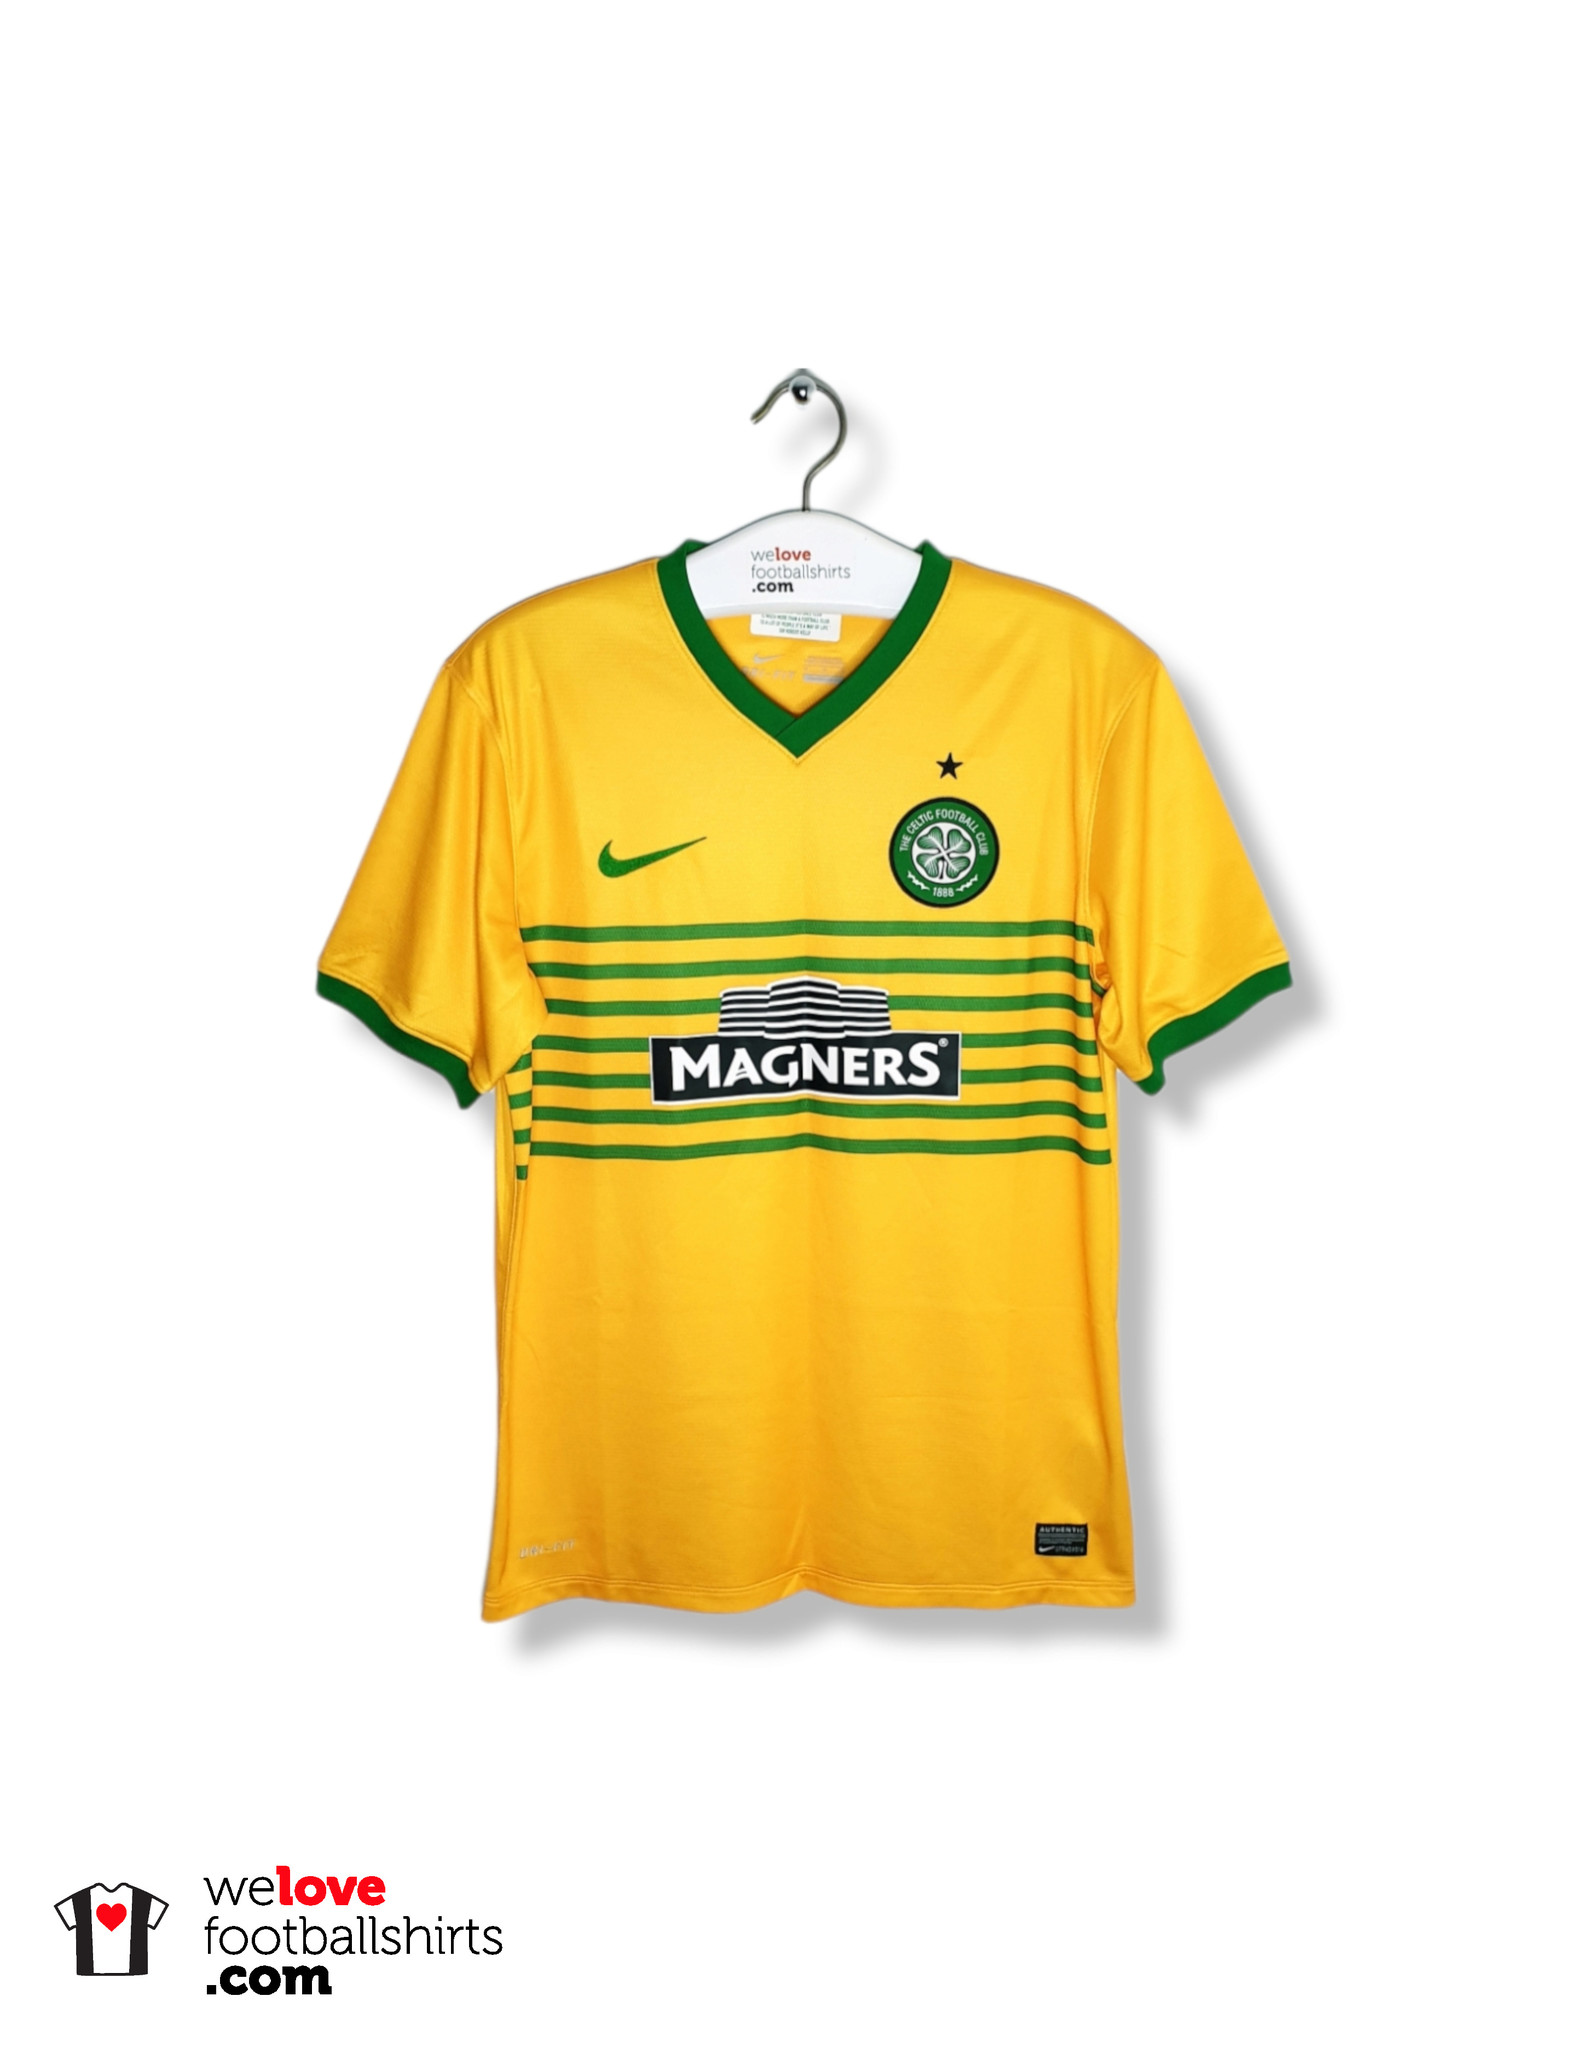 Image) Celtic New 2013/14 Nike Shirt Revealed: Leaked Photo of Magners  Sponsored Kit